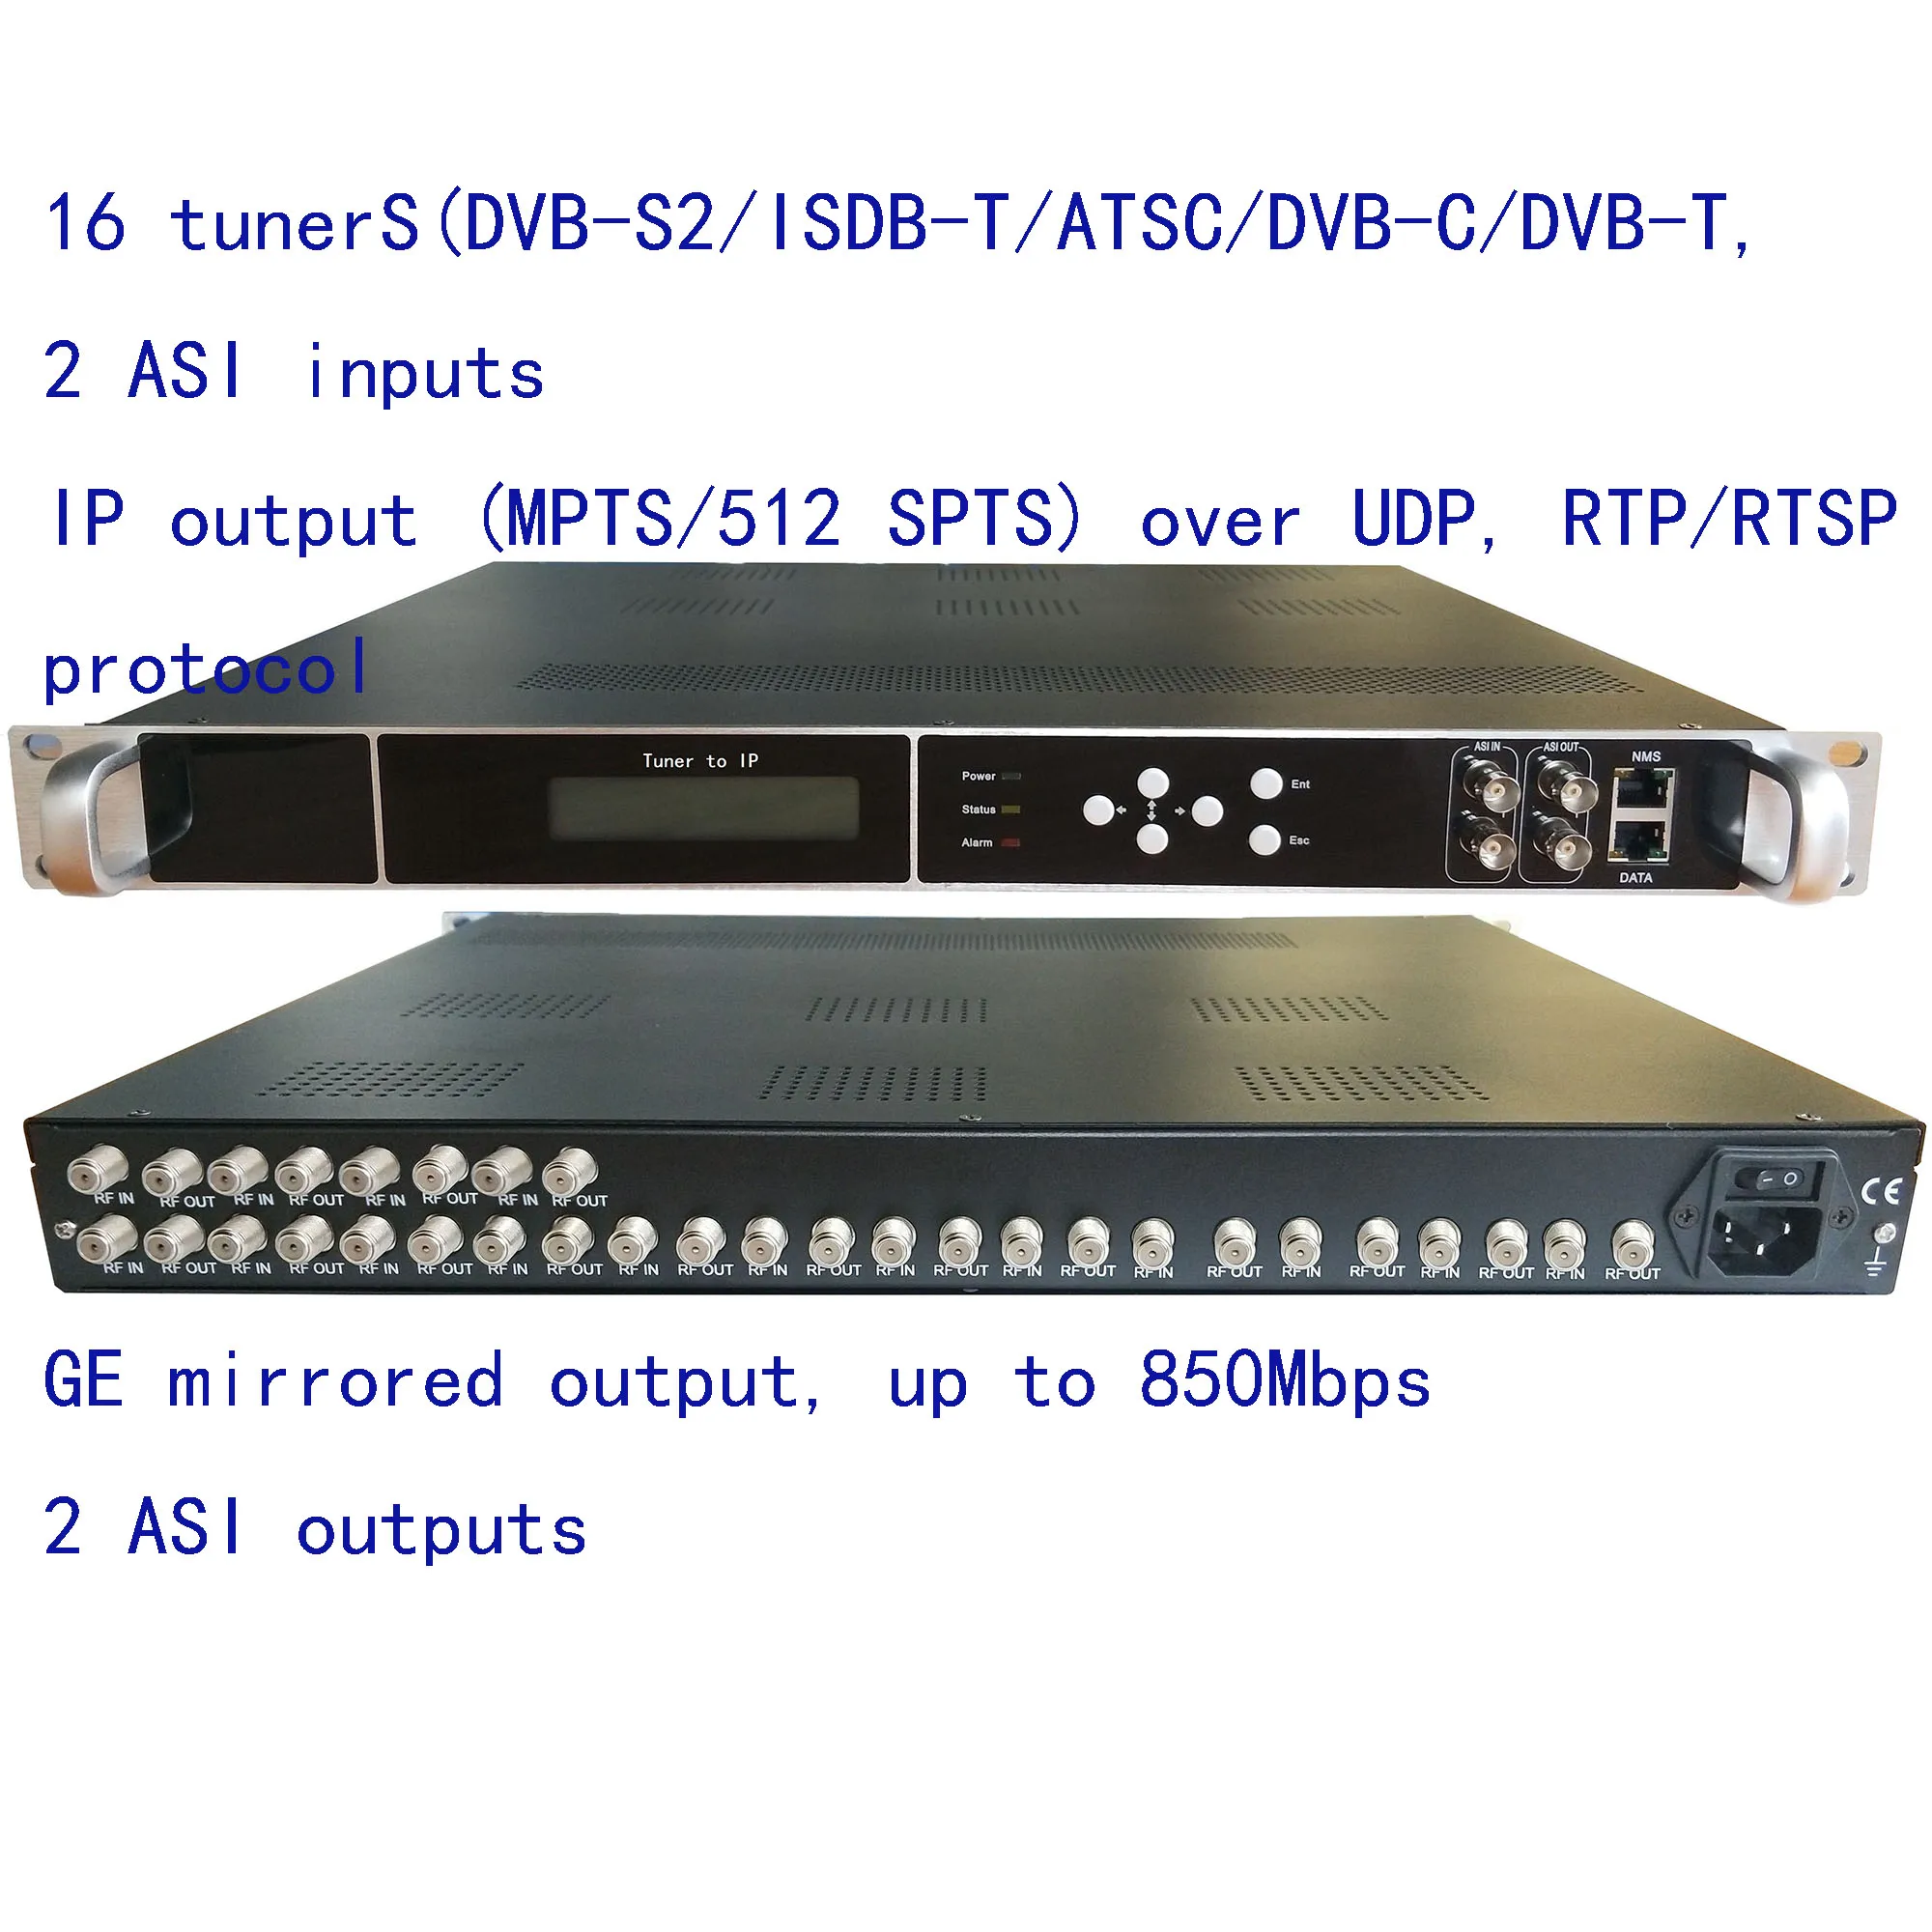 

16 DVB-S2 to IP/кодировщик ASI, Φ to IP/ASI выход, кодировщик catv, 1080P Multi-ISDB-T, DVB-T/C to IP/ASI